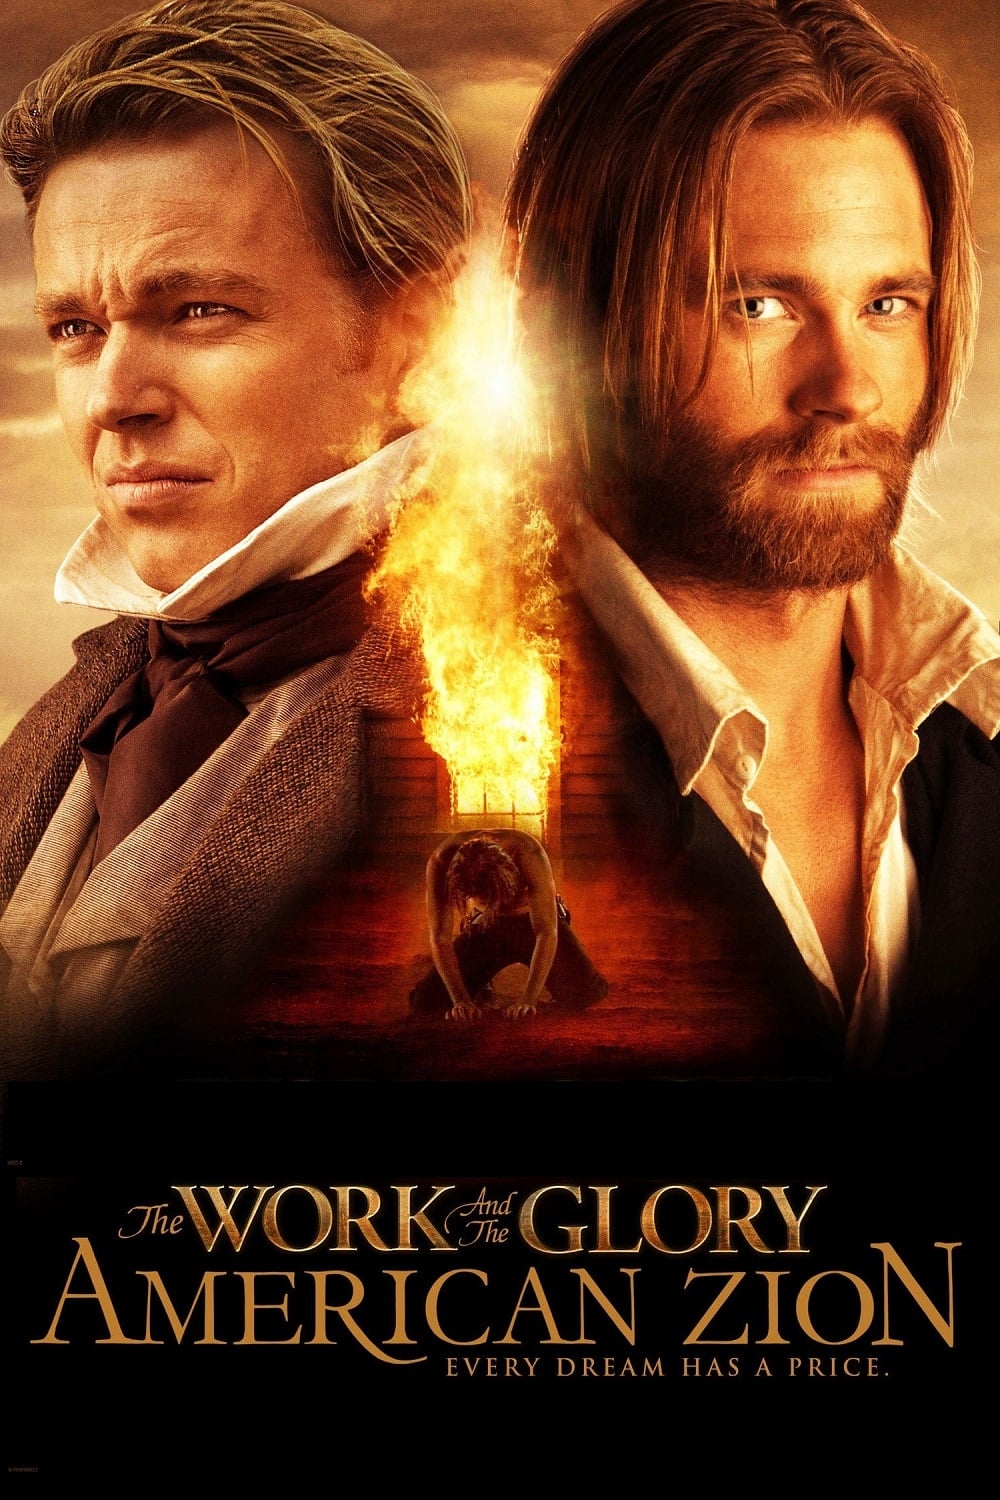 The Work and the Glory II: American Zion est-il disponible sur Netflix ou autre ?